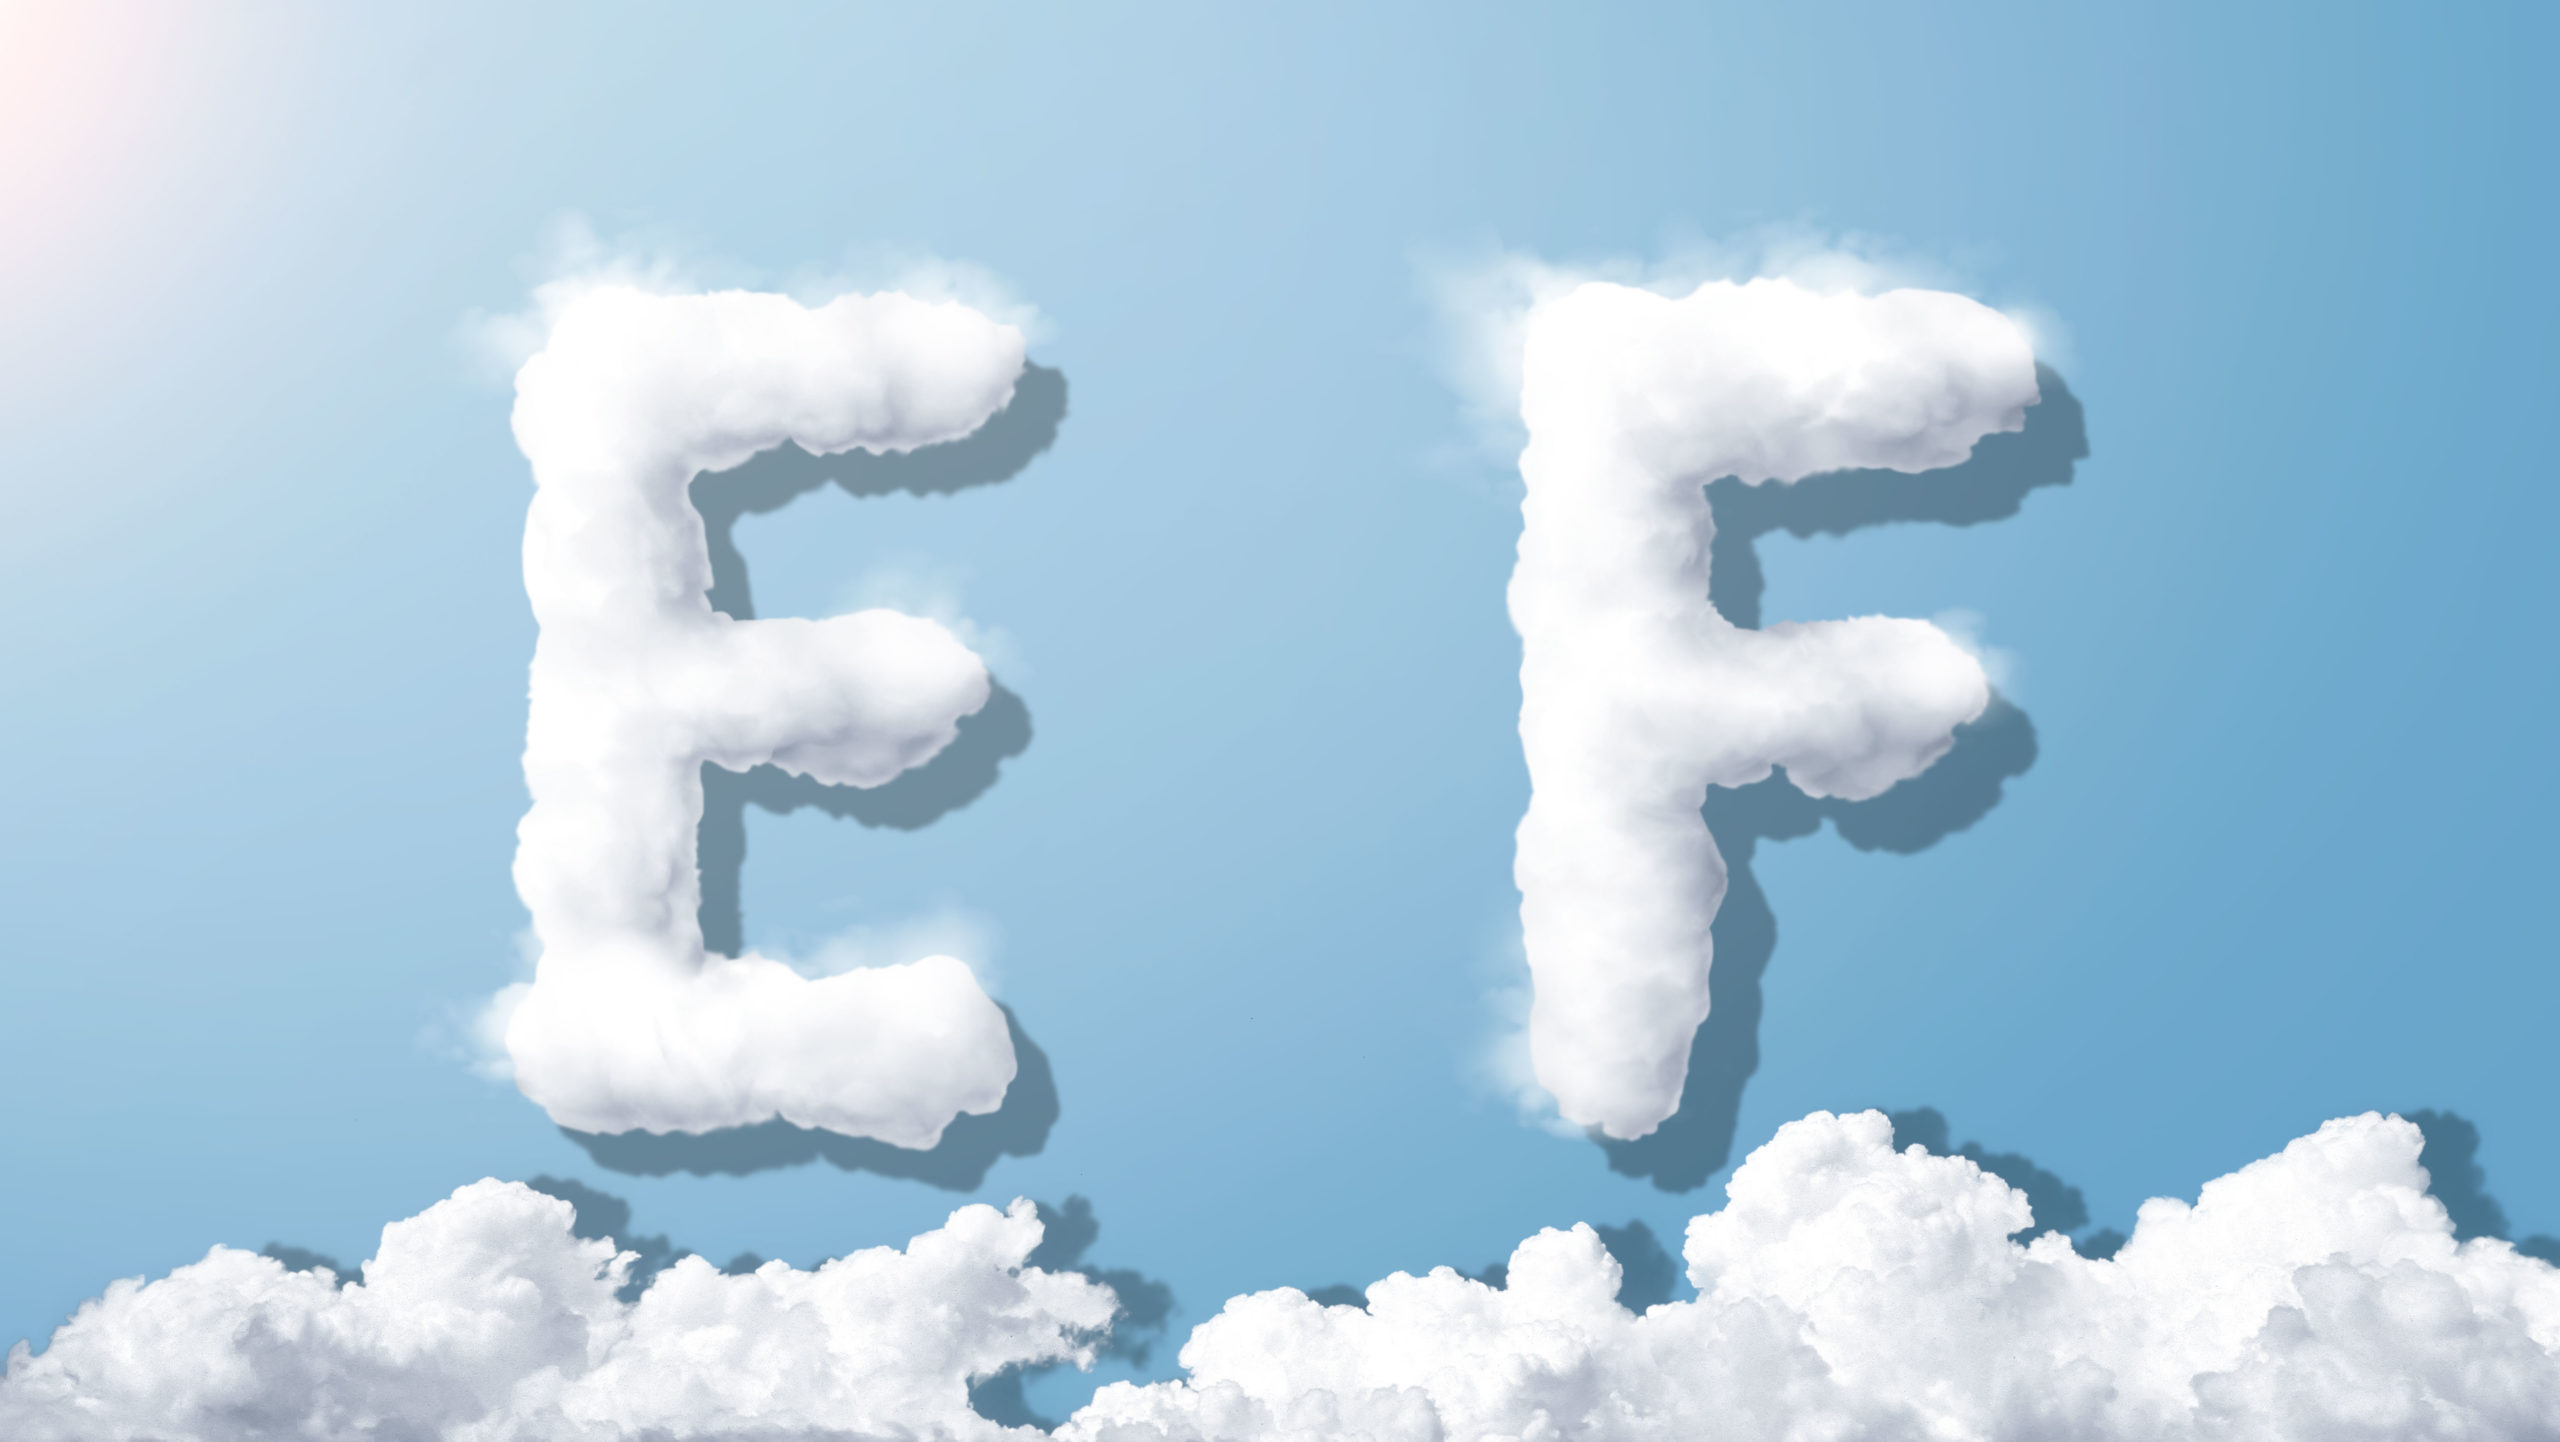 字母“EF”蓝天背景白云英文艺术字体素材库精选PSD素材插图